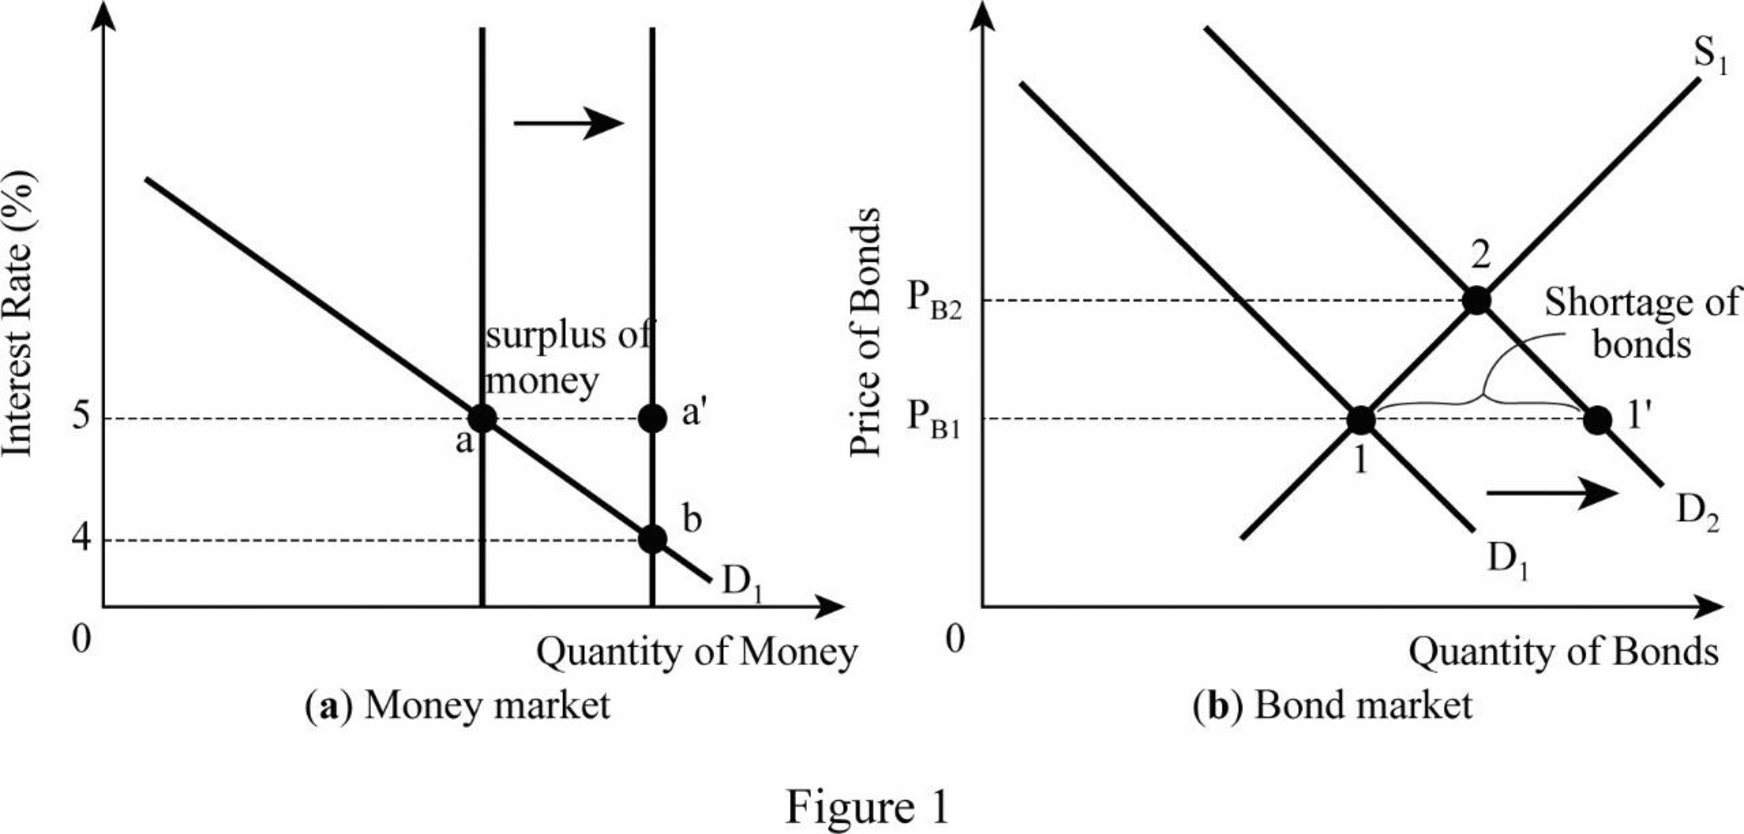 Economics - With MindTap (2 Terms), Chapter D, Problem 1QP 